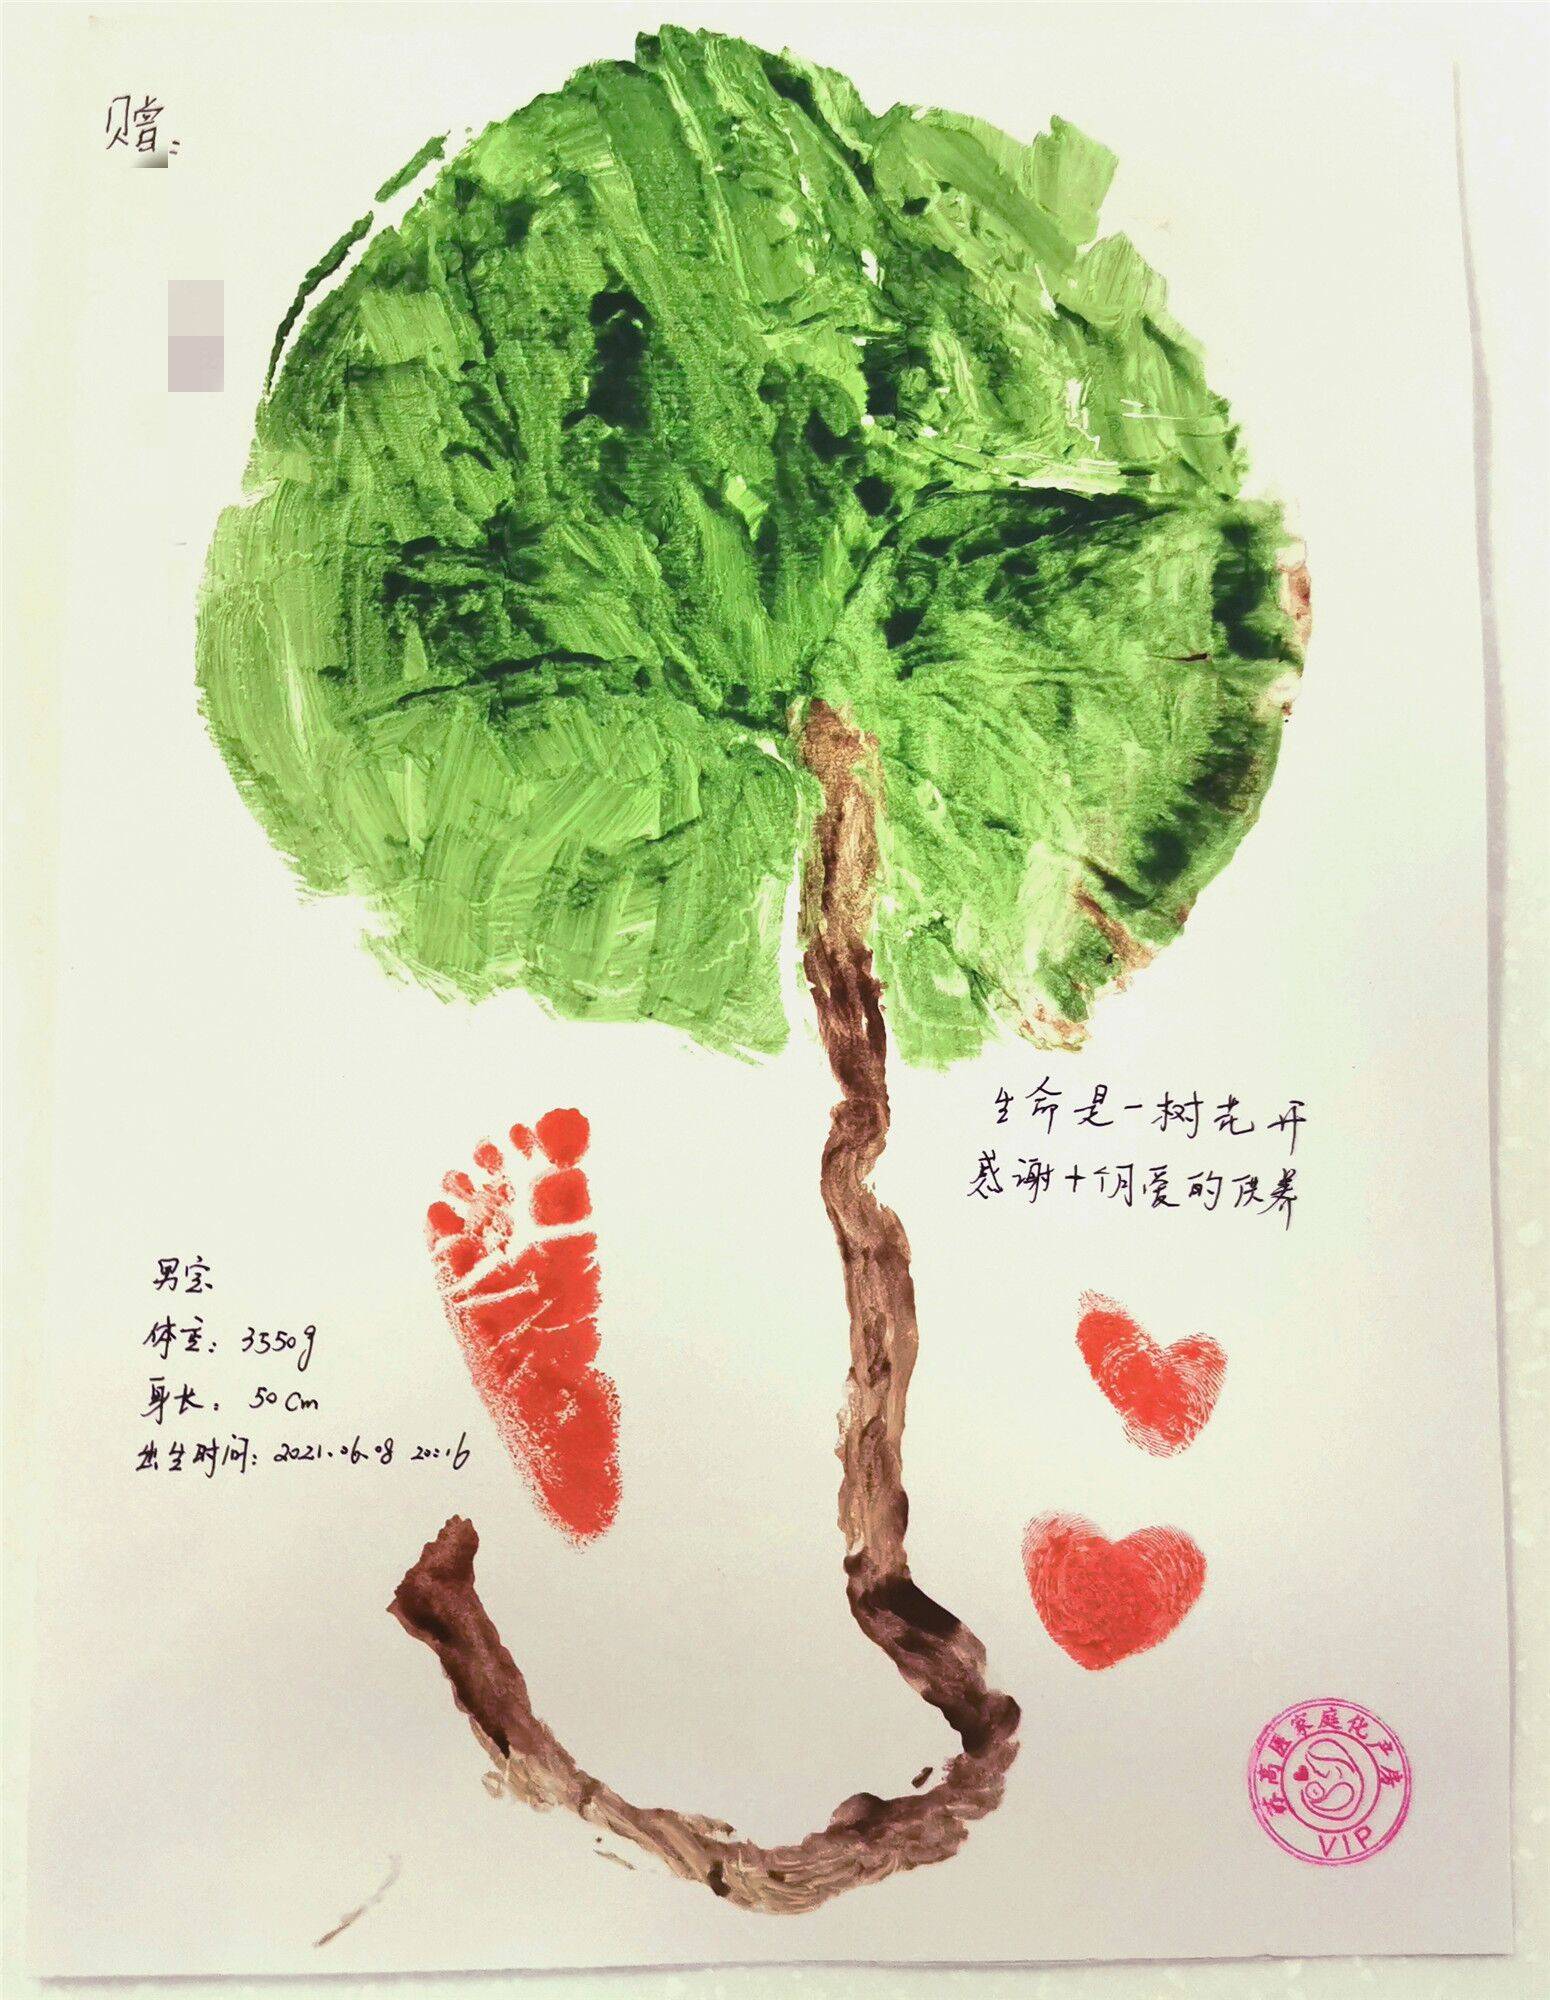 收到了一份特别的礼物——象征生命之树的胎盘拓印画